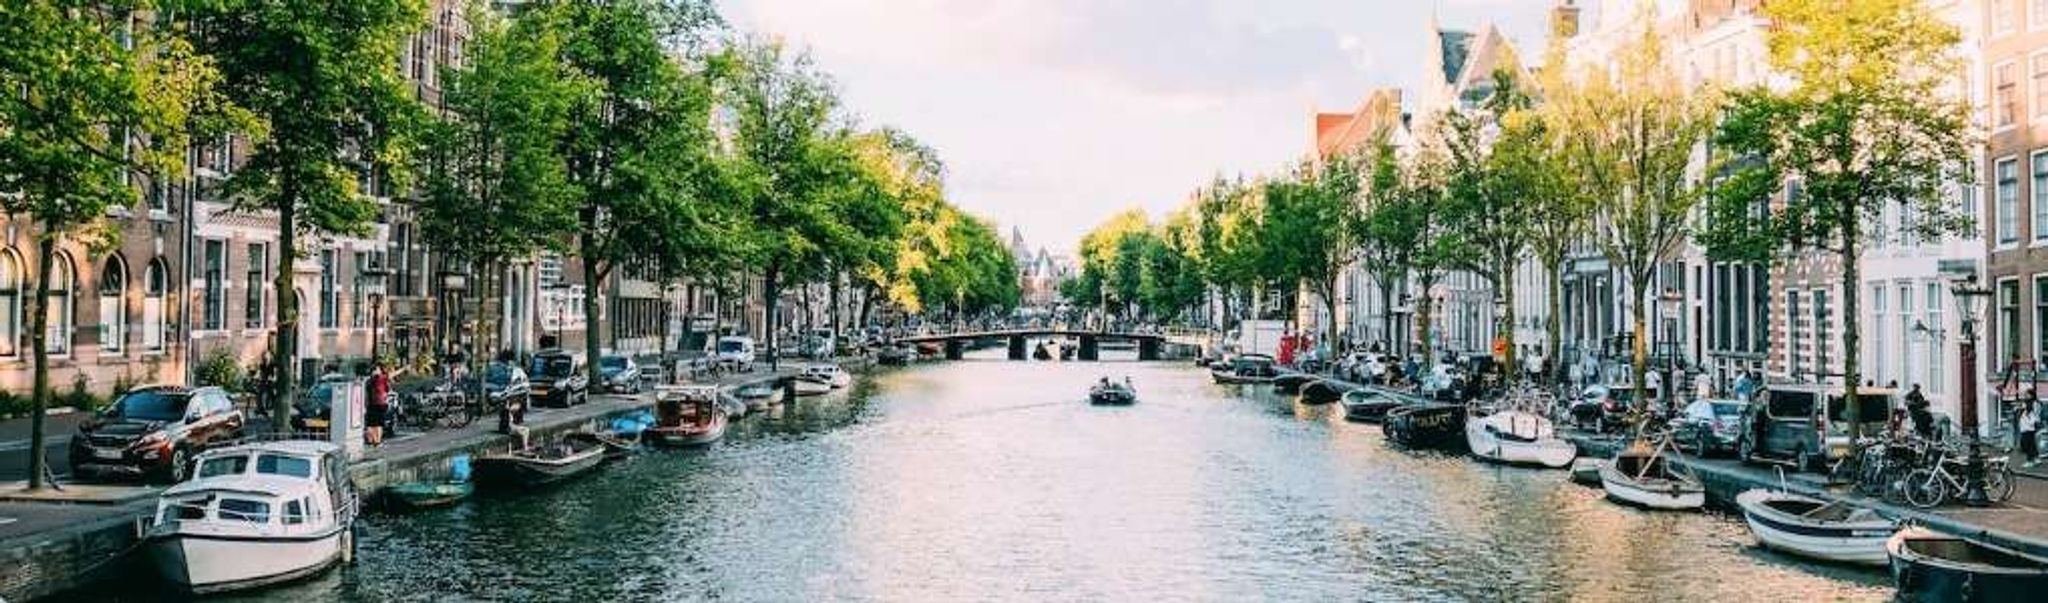 goedkope vakantie nederland